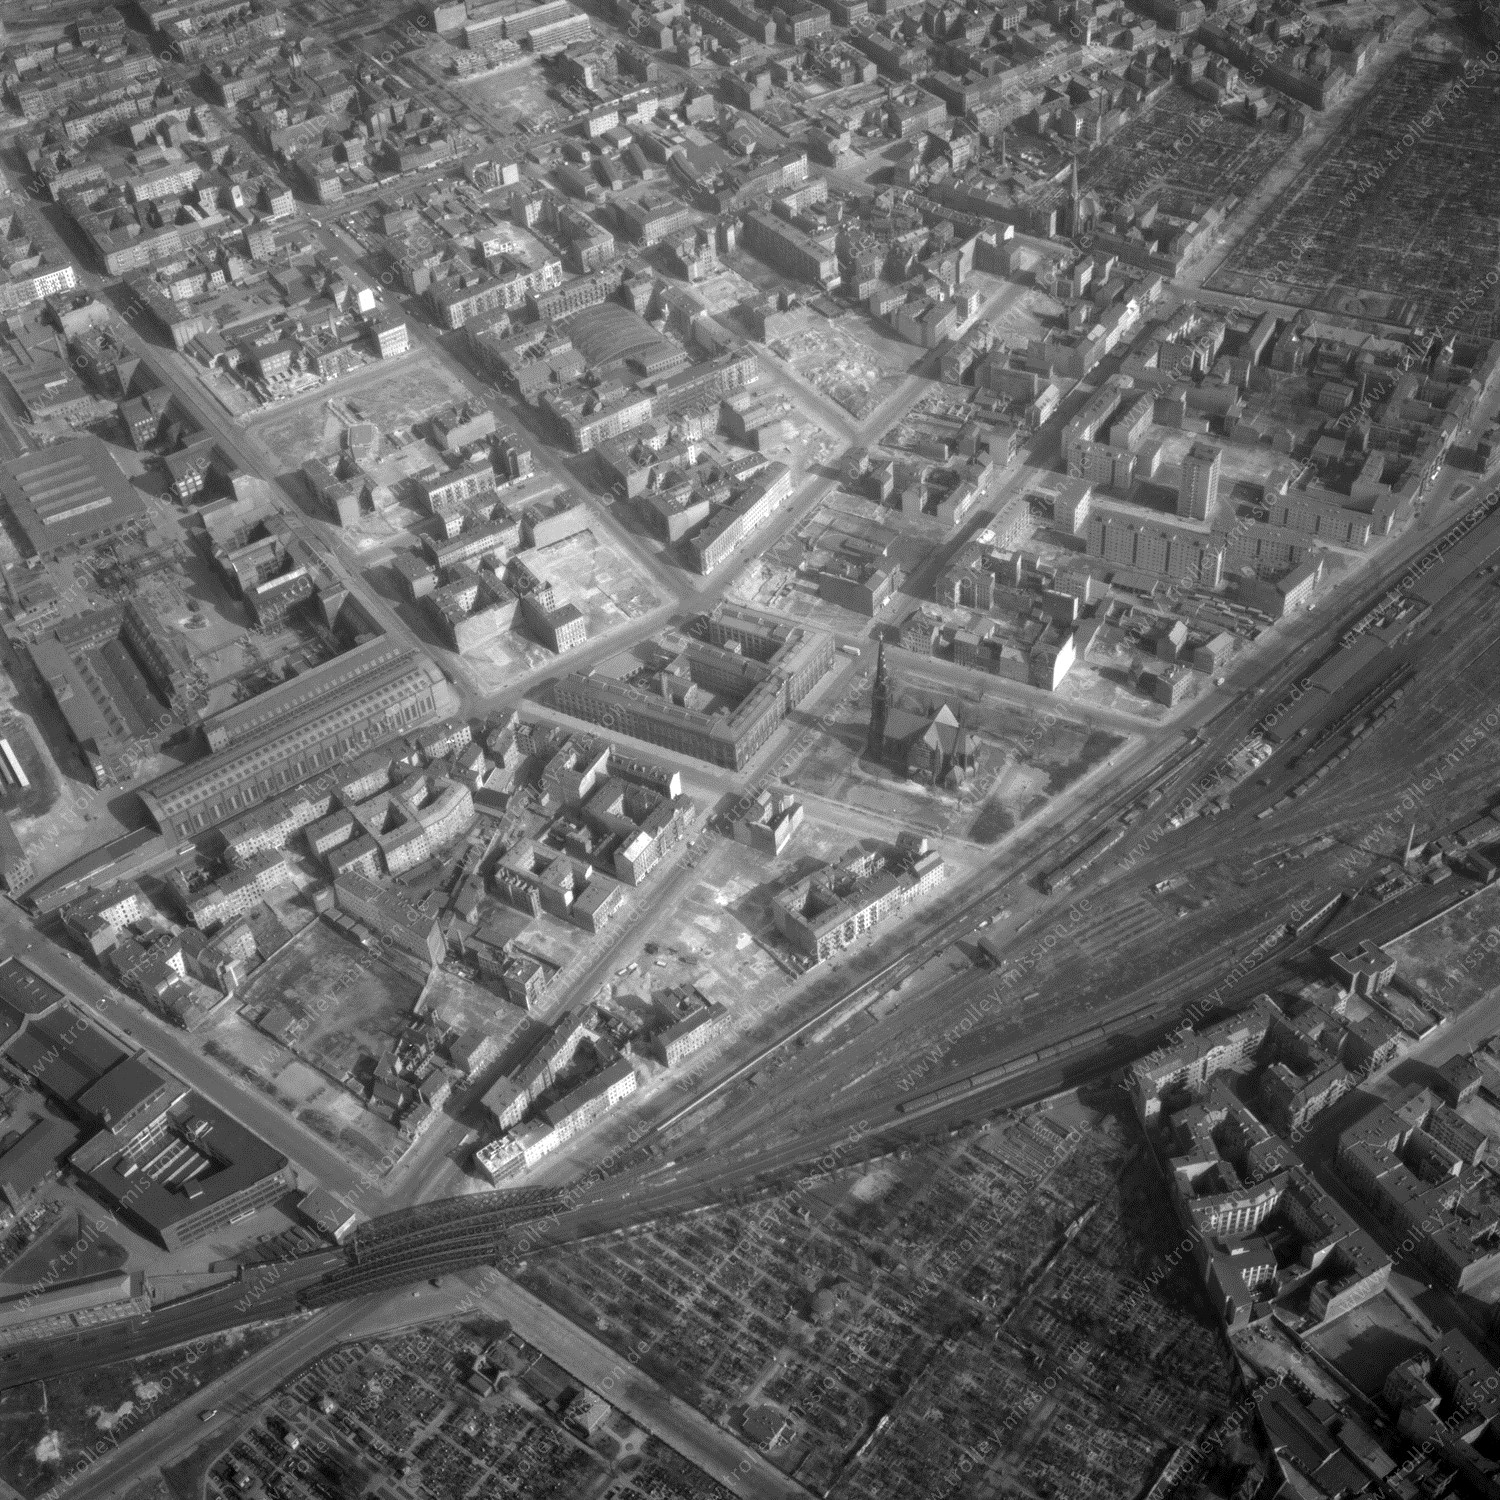 Alte Fotos und Luftbilder von Berlin - Luftbildaufnahme Nr. 04 - Historische Luftaufnahmen von West-Berlin aus dem Jahr 1954 - Flugstrecke Romeo